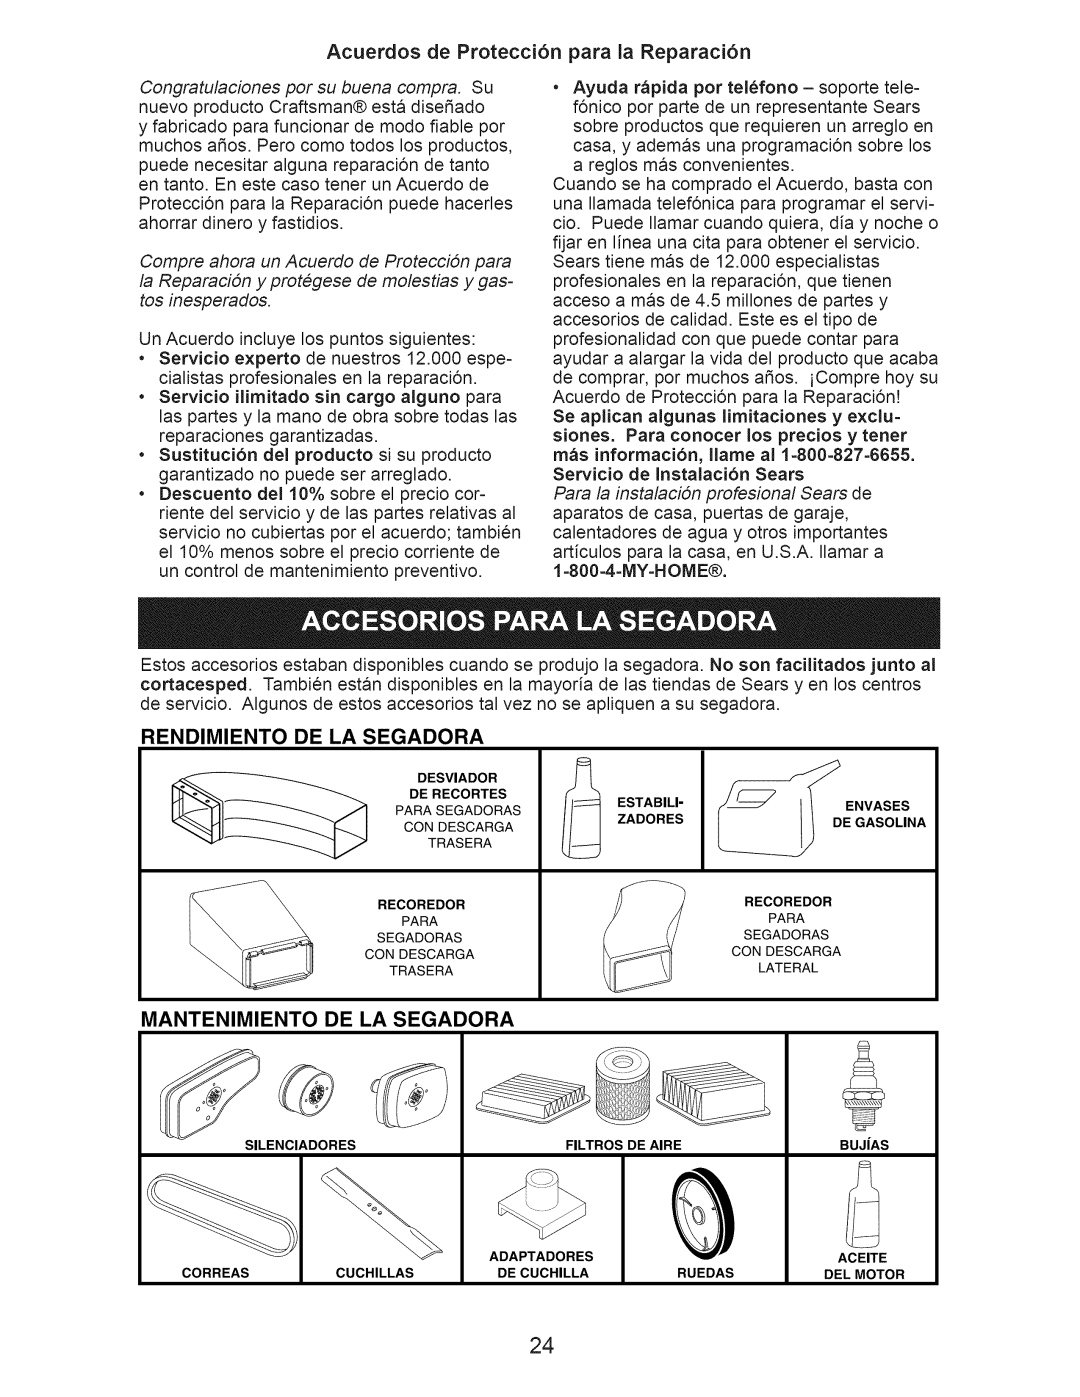 Craftsman 917.374101 Acuerdos de Protecci6n para la Reparaci6n, Rendimiento De La Segadora, Mantenimiento De La Segadora 